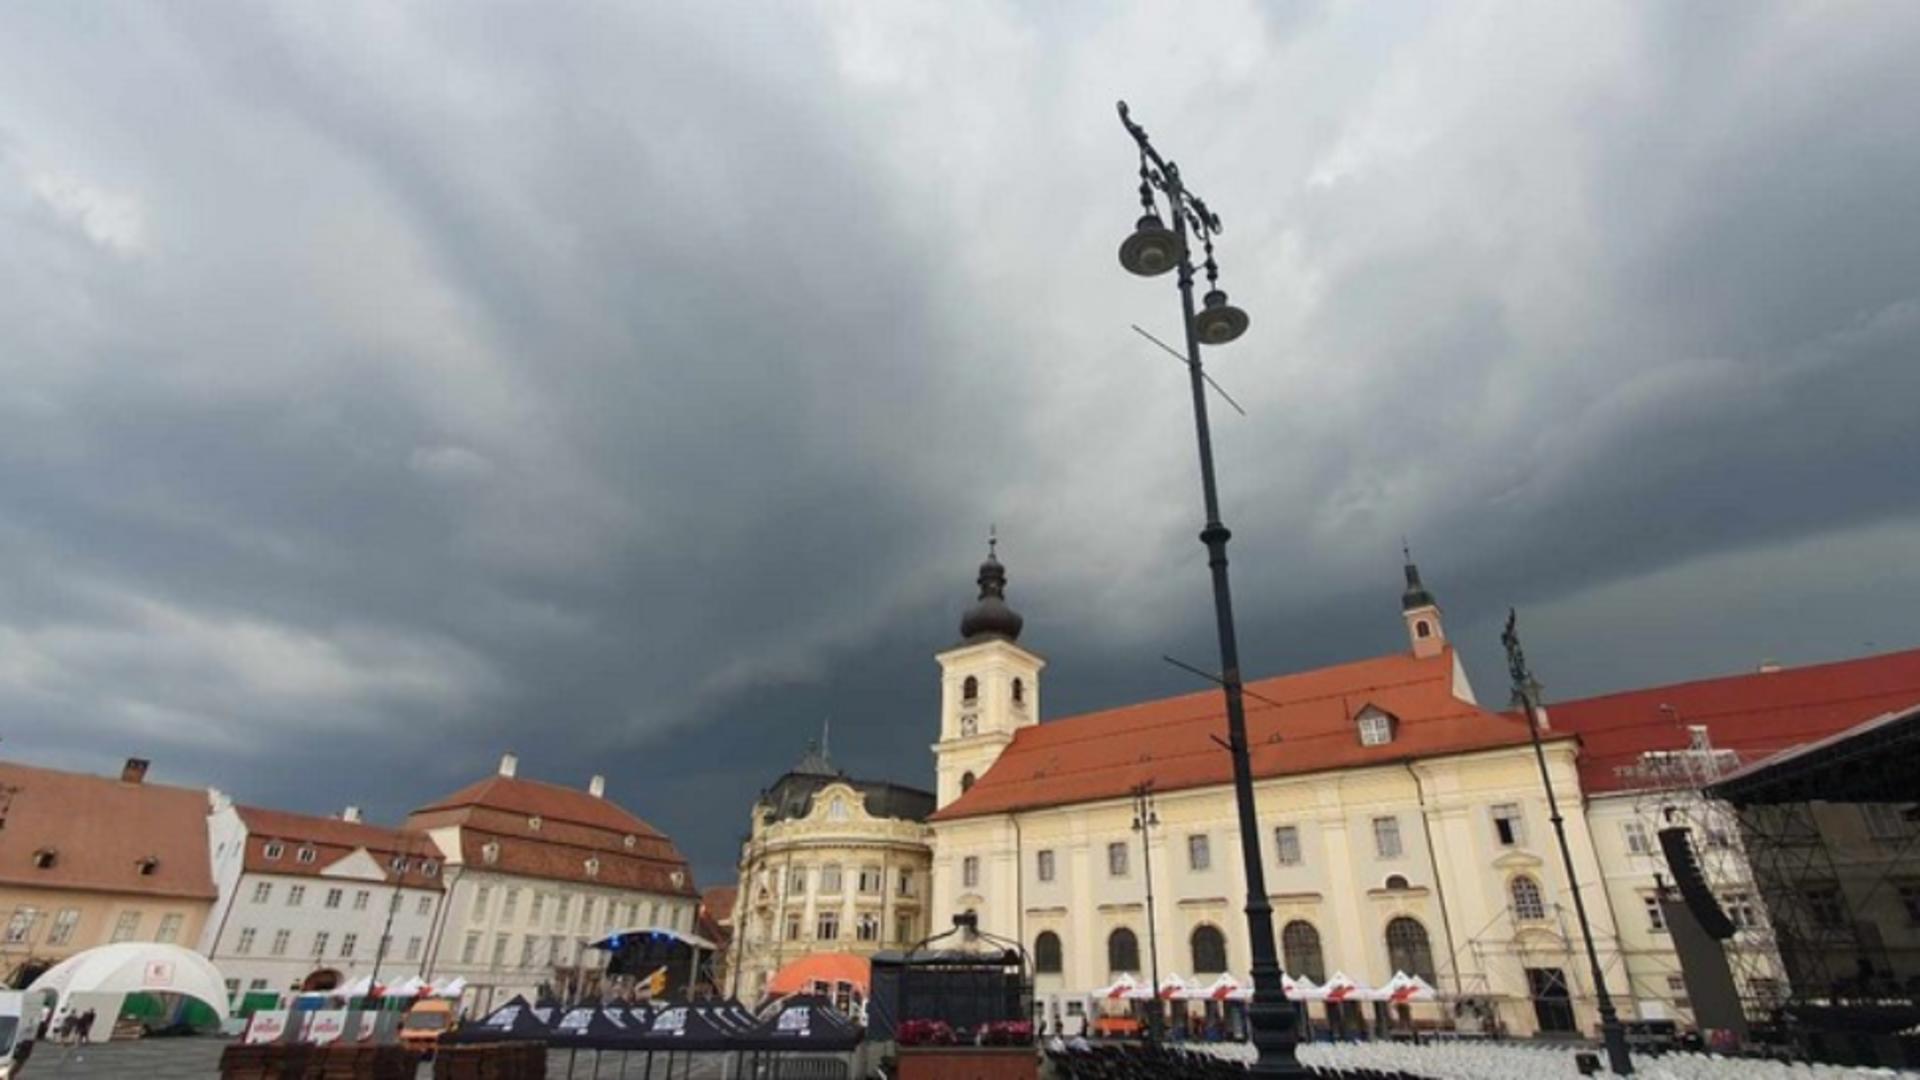 Matiz luat de vânt de pe o stradă din Sibiu, după o furtună puternică